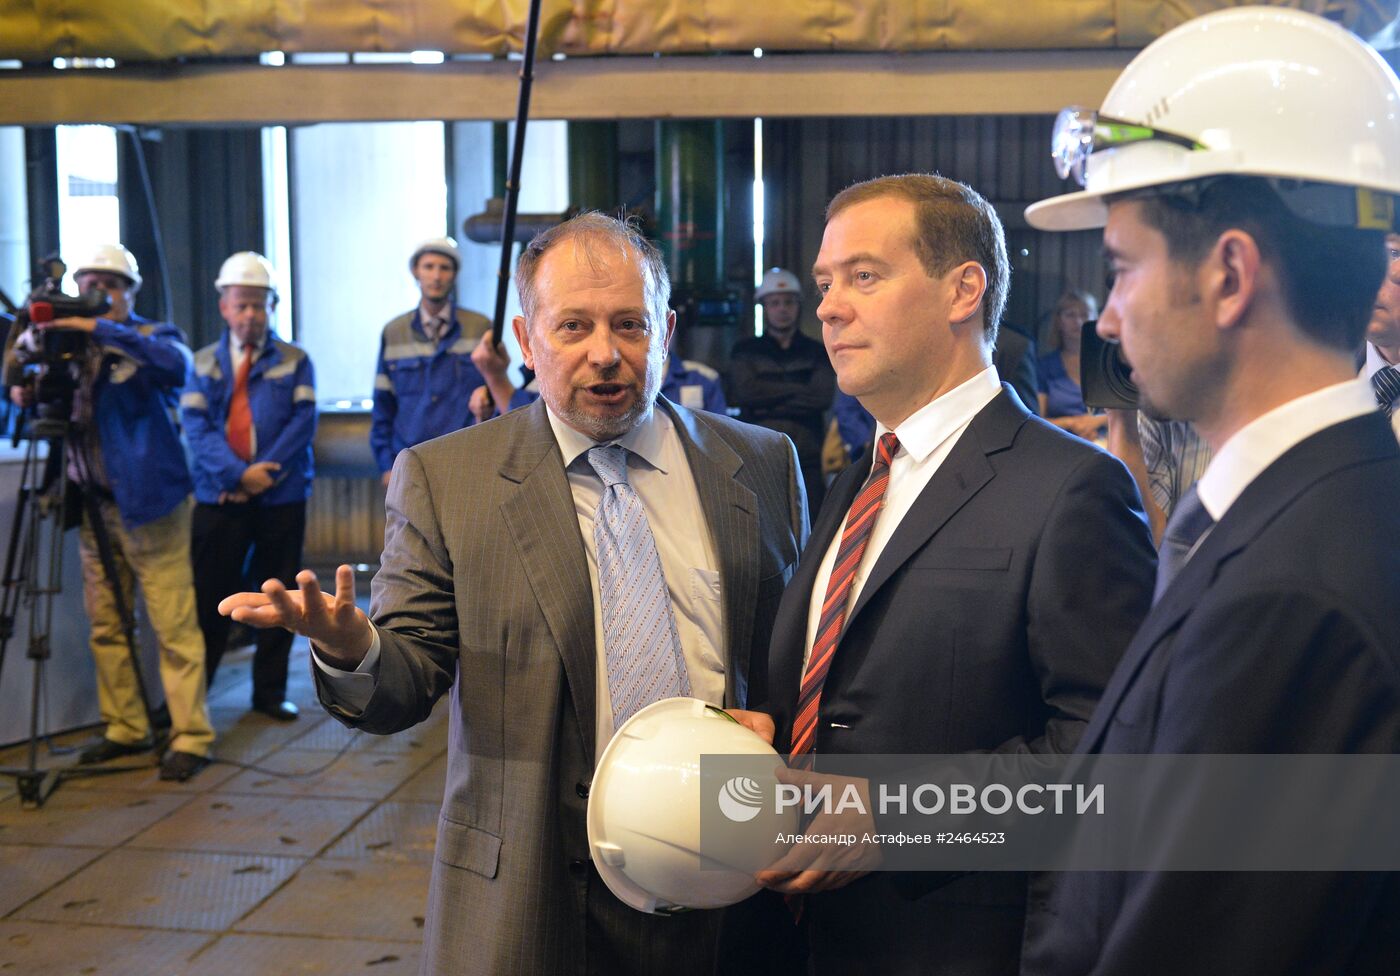 Рабочая поездка Д.Медведева в Липецк